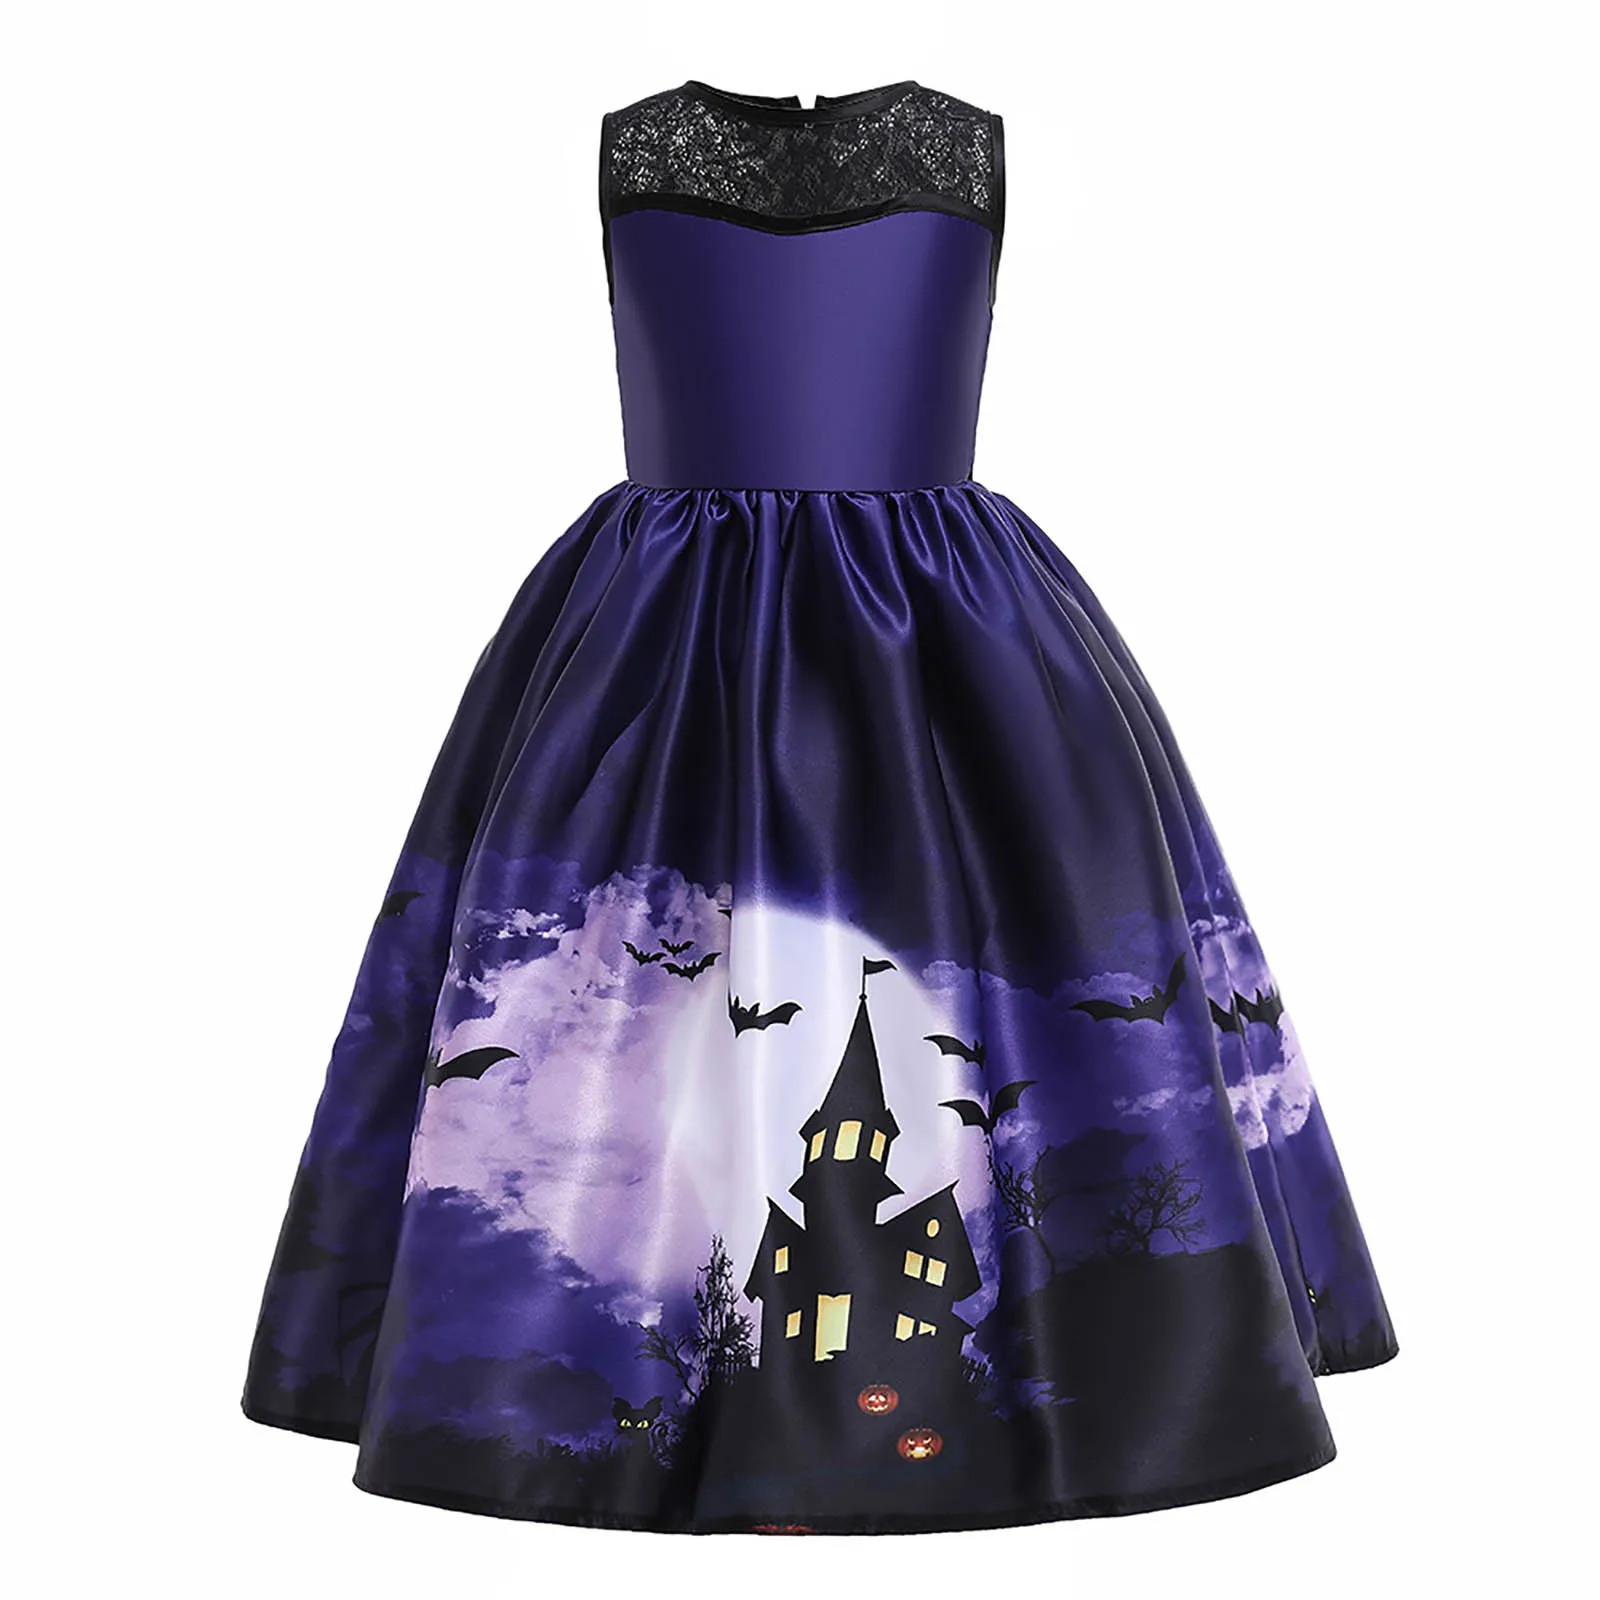 Çocuk Kız Cadılar Bayramı Elbise süslü elbise Kostümleri Kabak Baskı Dantel Patchwork Saten Elbise Prenses Elbise Akşam Parti Balo elbisesi Görüntü 1